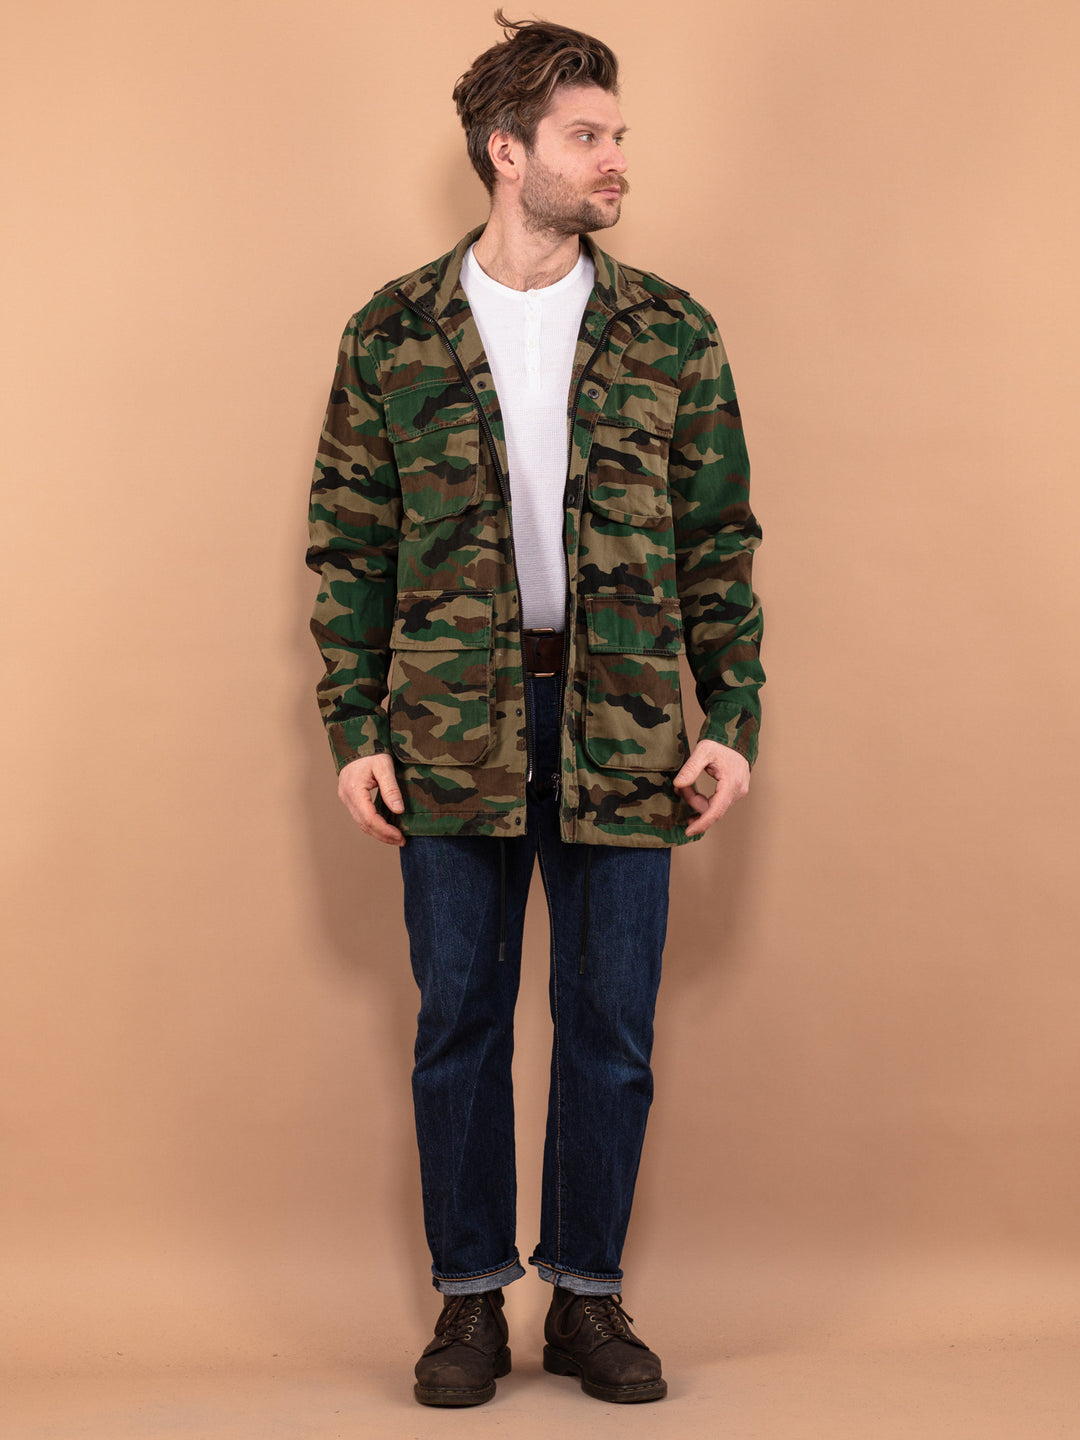 Camouflage Parka Jacket, Size S Military Style Jacket, Vintage Army Jacket, Field Outdoors Jacket, Cargo Field Jacket, Men's Fieldwear